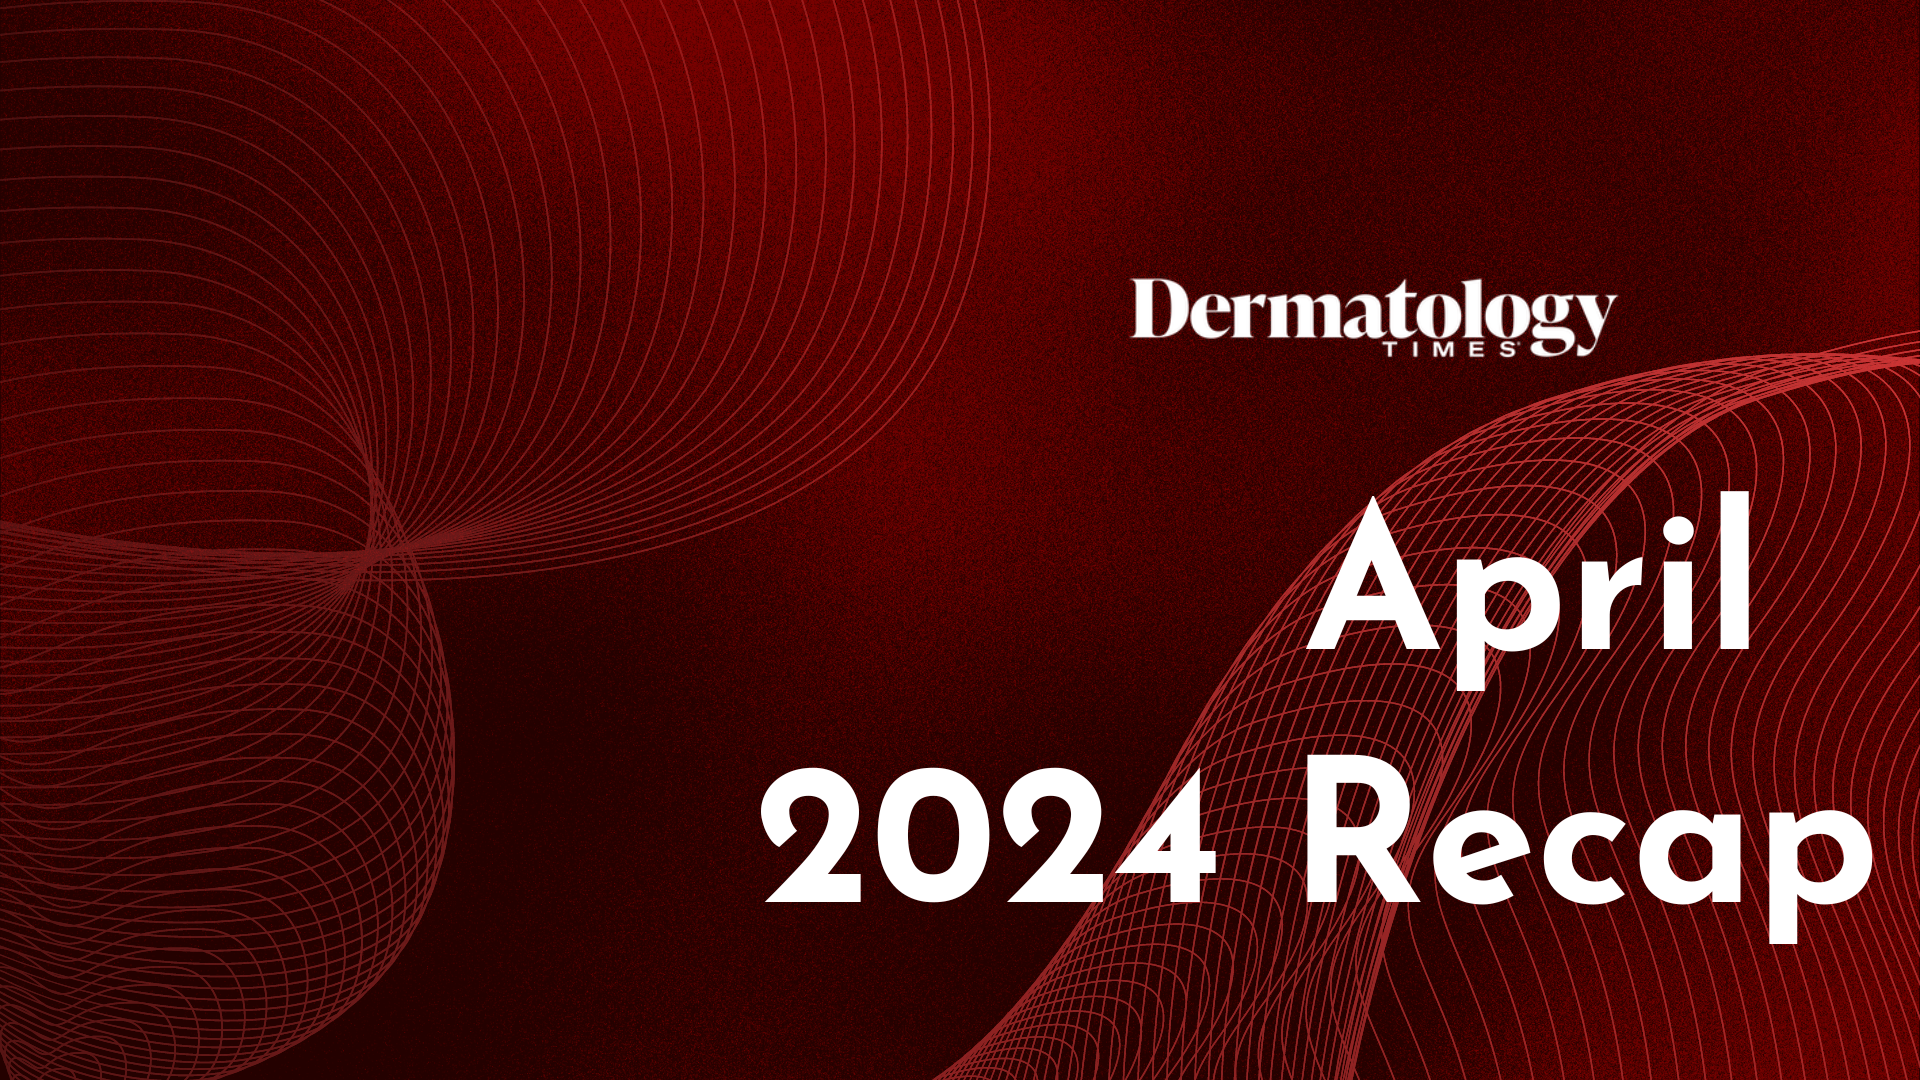 Dermatology Times April 2024 Recap